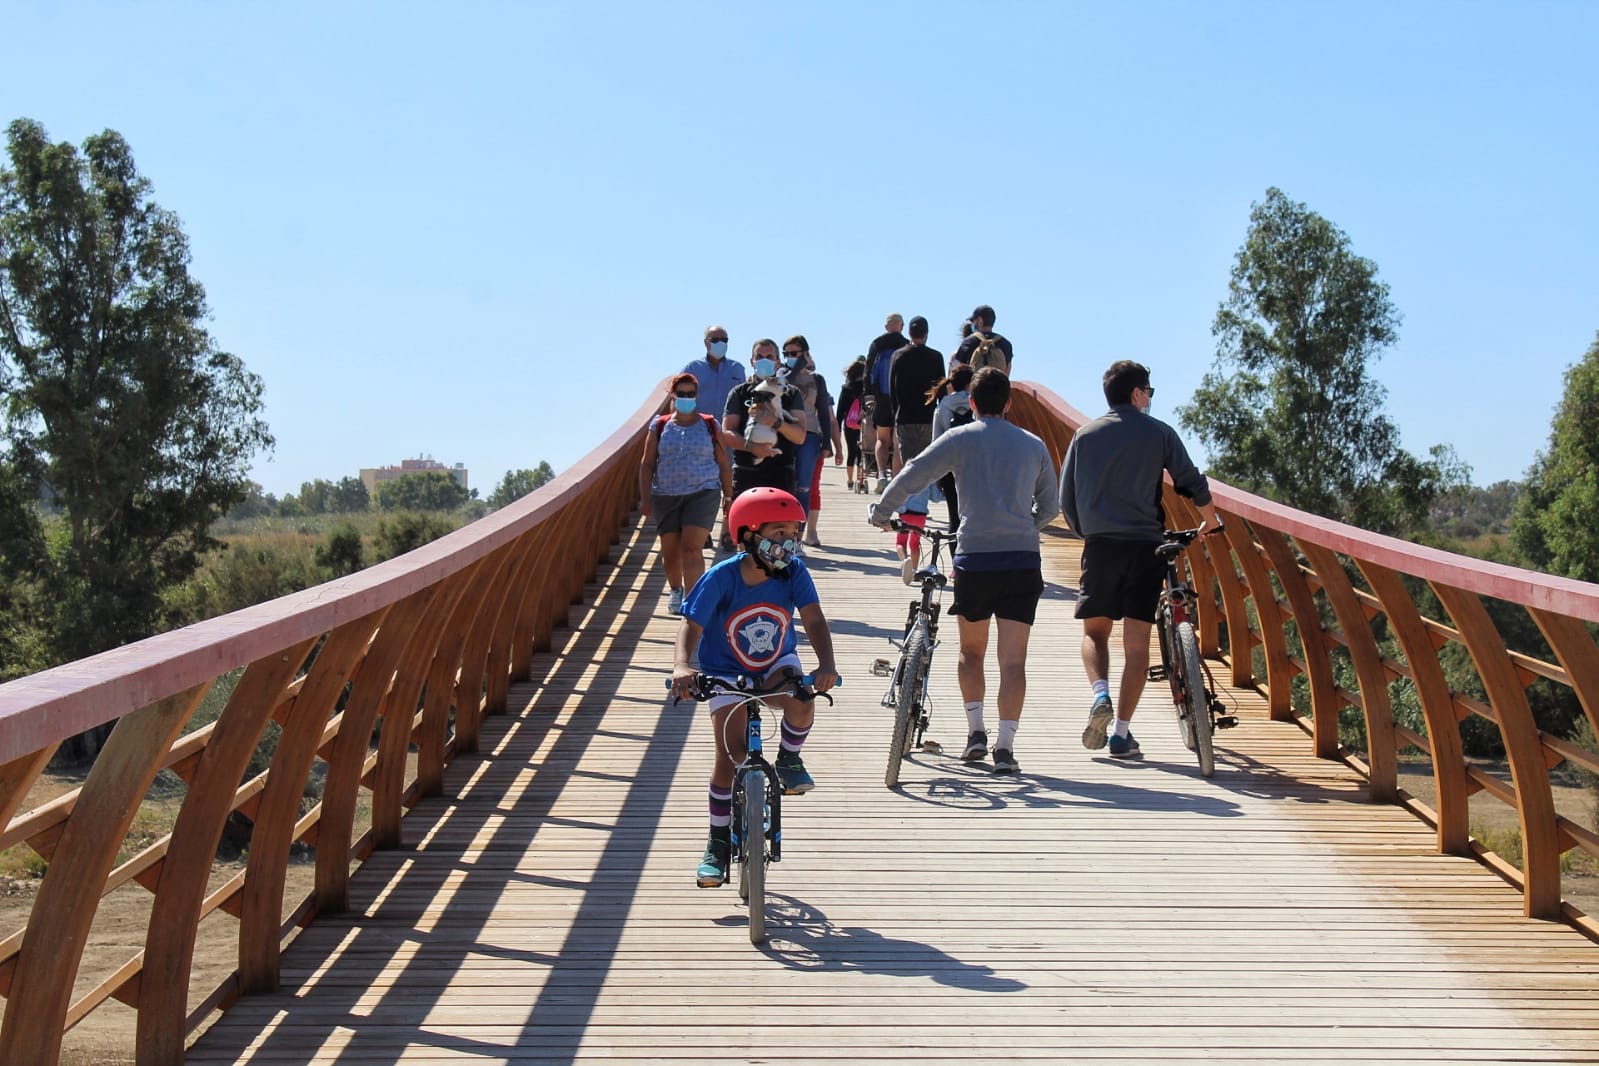 Miles de personas acuden a pie y en bici a conocer el puente de madera el primer sábado después de su inauguración